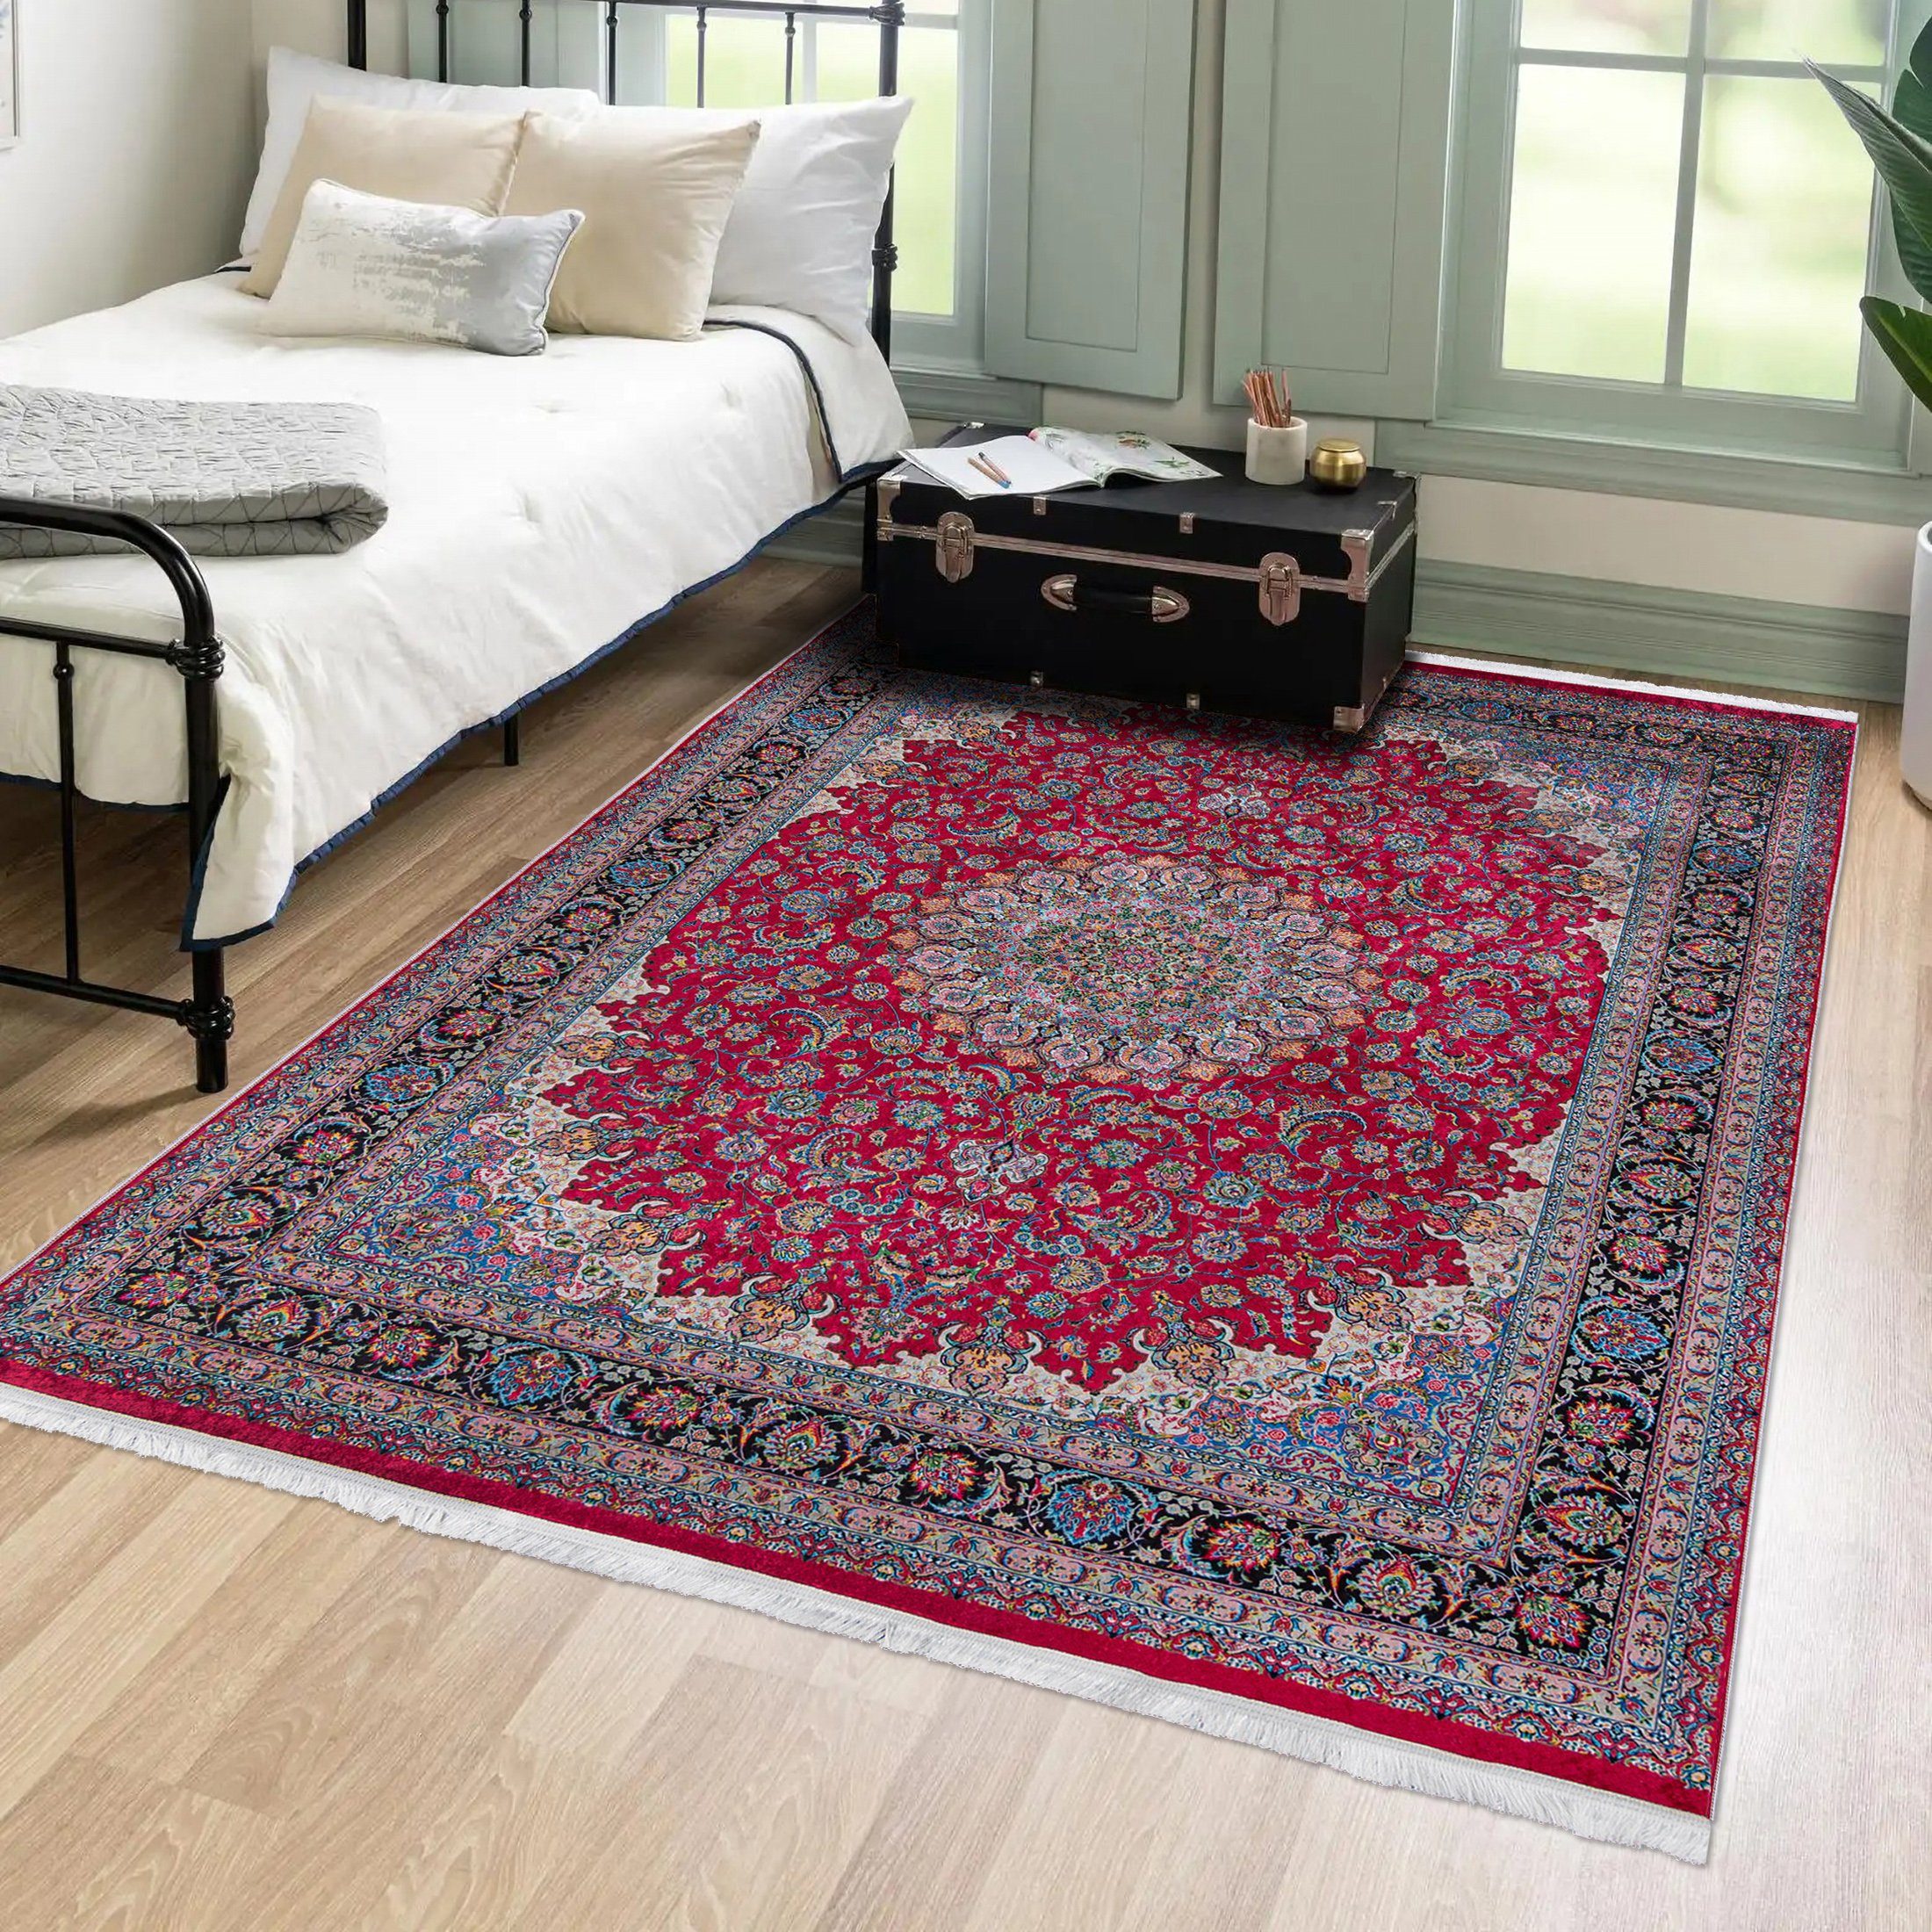 Orientteppich Orientalisch Vintage Teppich Traditioneller Orient Teppich, Mazovia, 120 x 170 cm, Kurflor, Waschbar in Waschmaschine, Höhe 5 mm, Rutschfest Rot / 42360 | Alle Teppiche